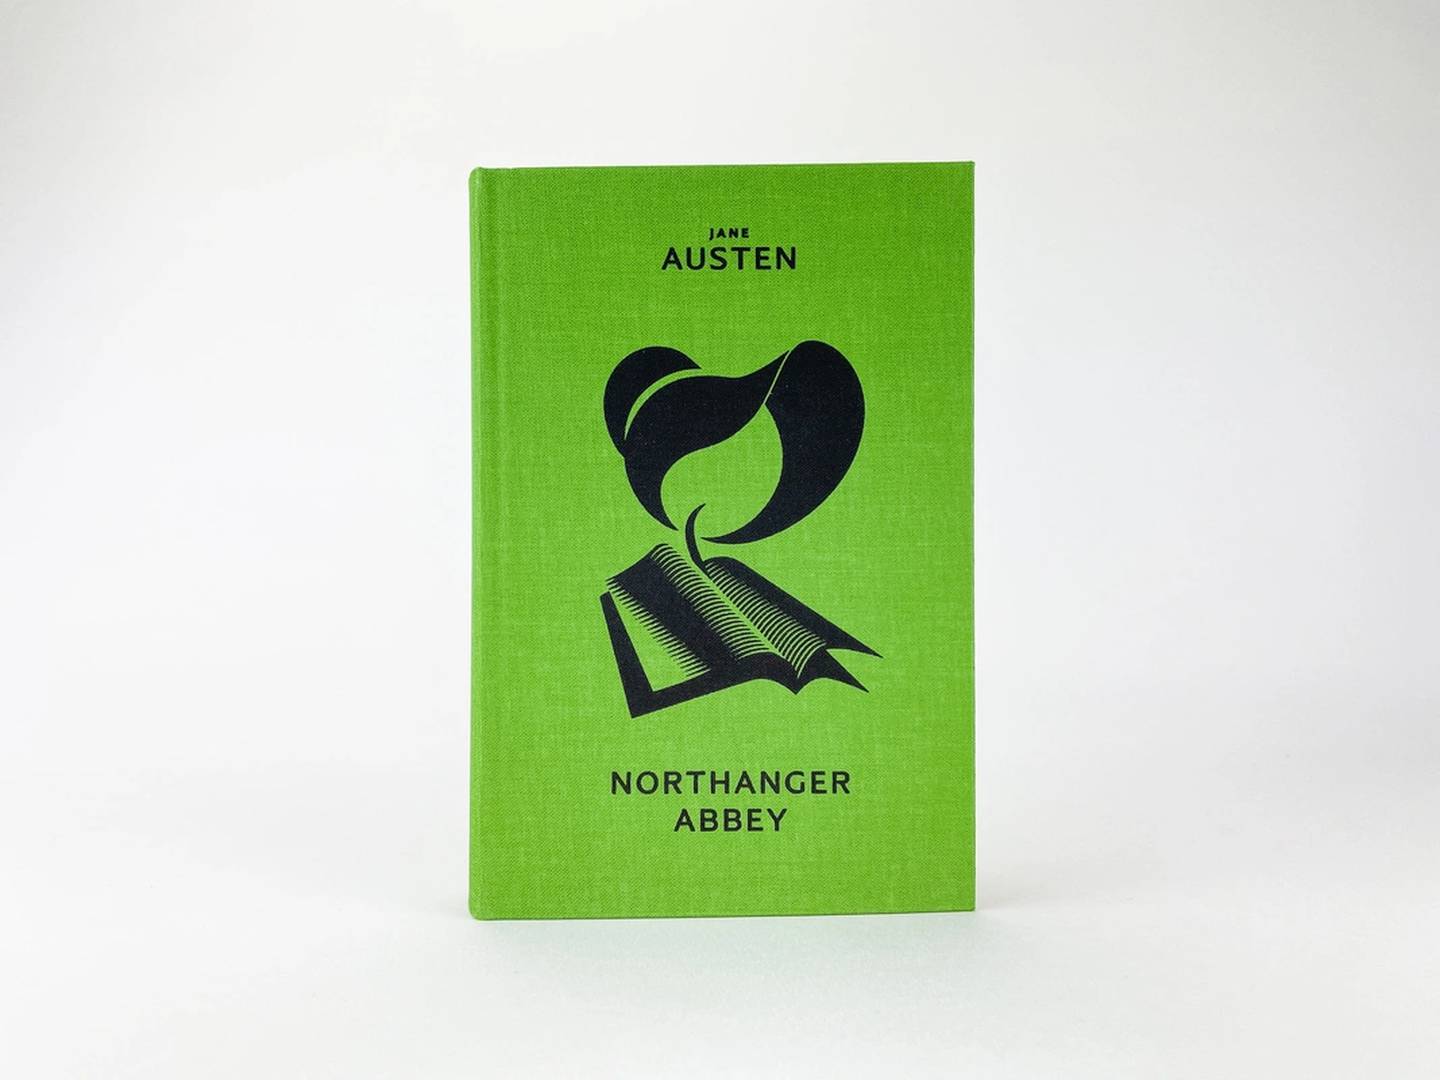 Skald forlag gir ut Jane Austens «Northanger Abbey» i sin serie med klassikere i nye oversettelser til nynorsk